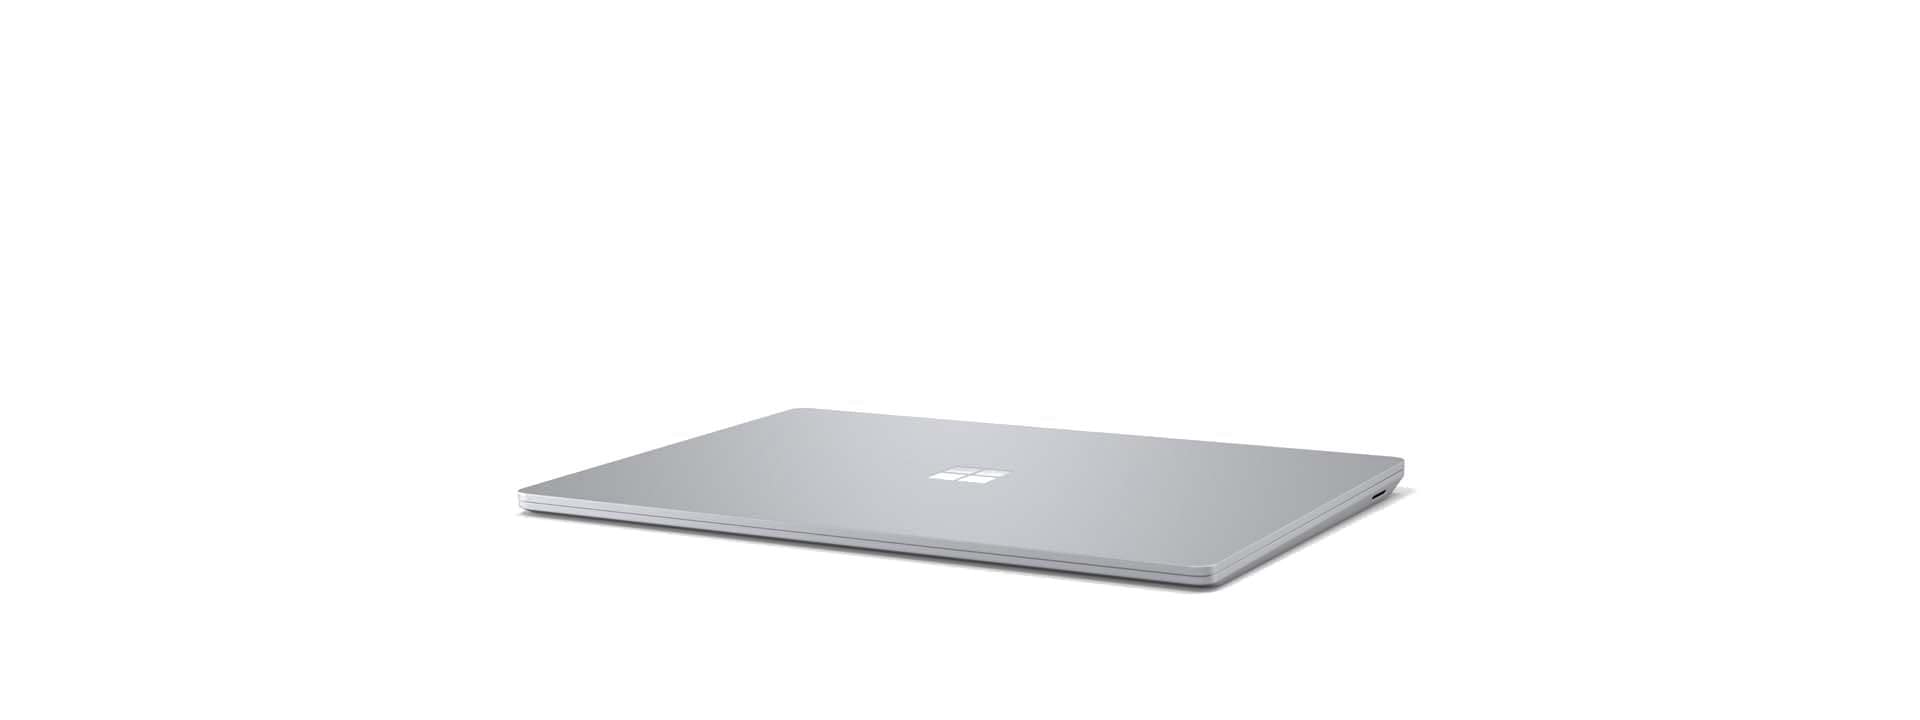 جهاز Surface Laptop 3 يظهر بزاوية والشاشة مغلقة